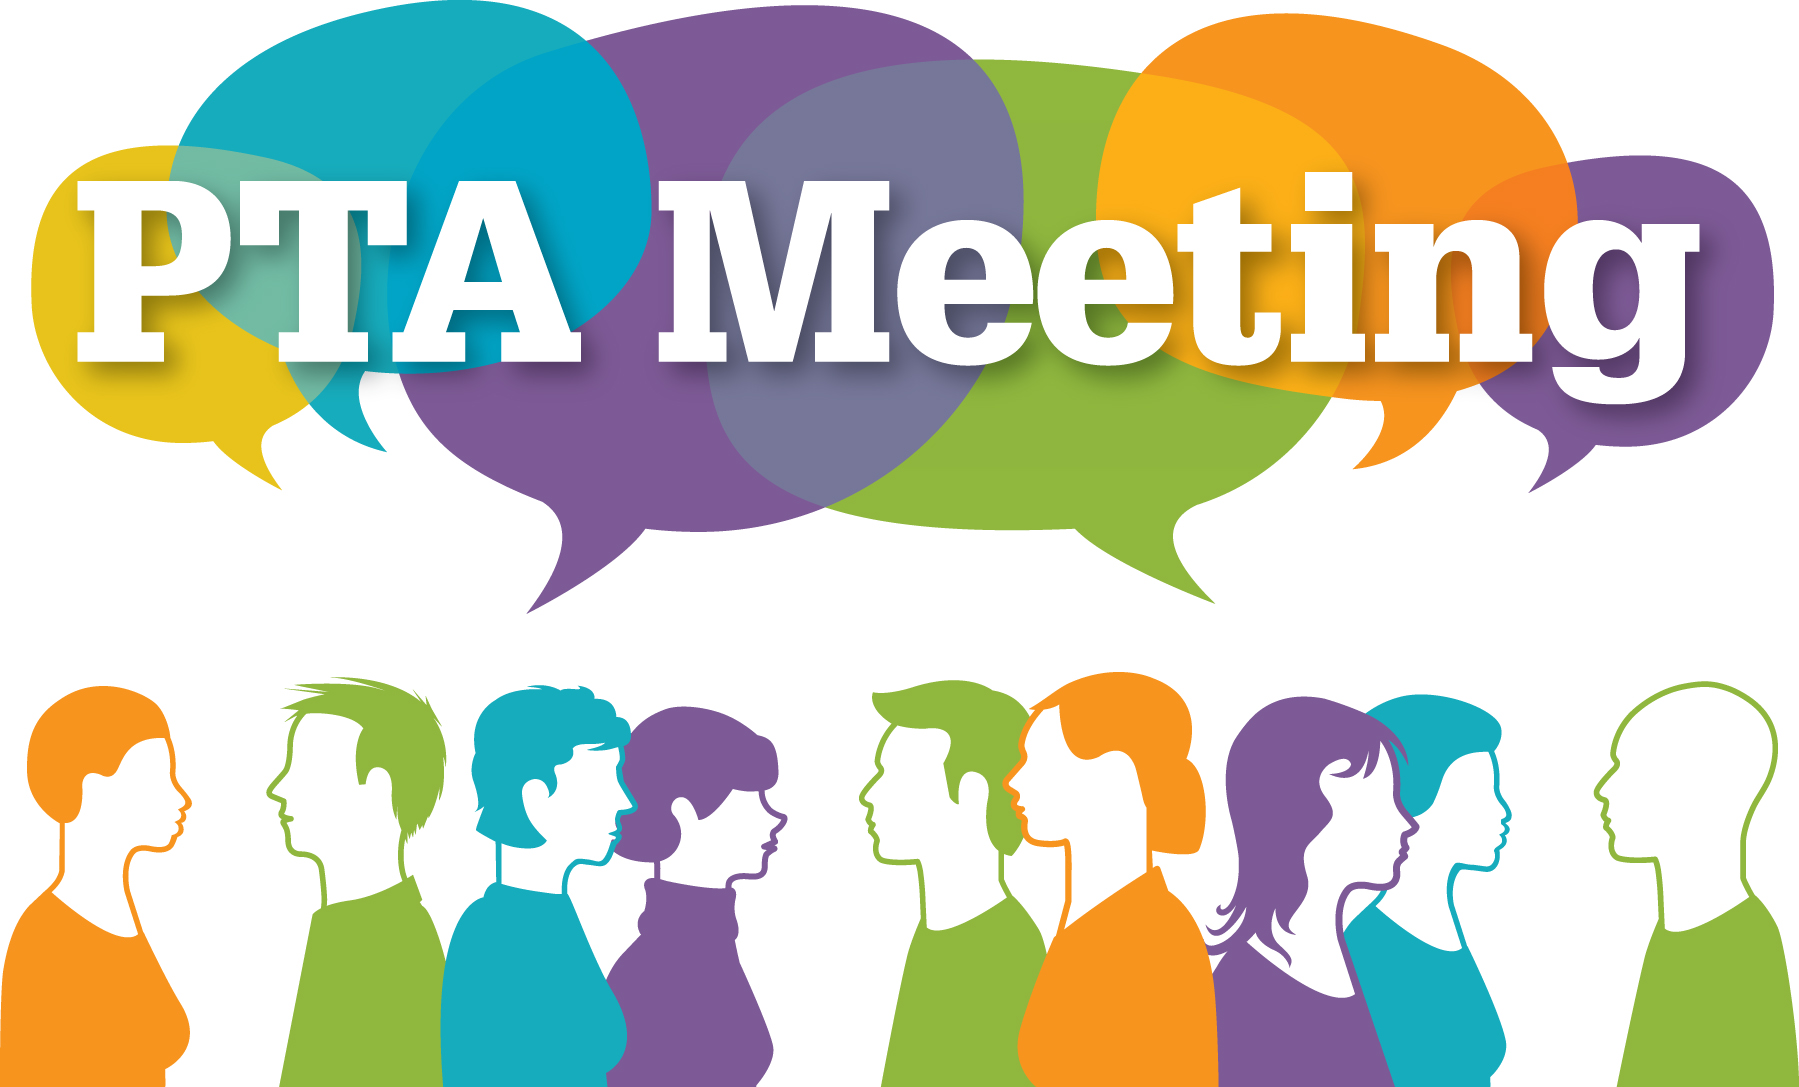 May 14 – PTA Meeting